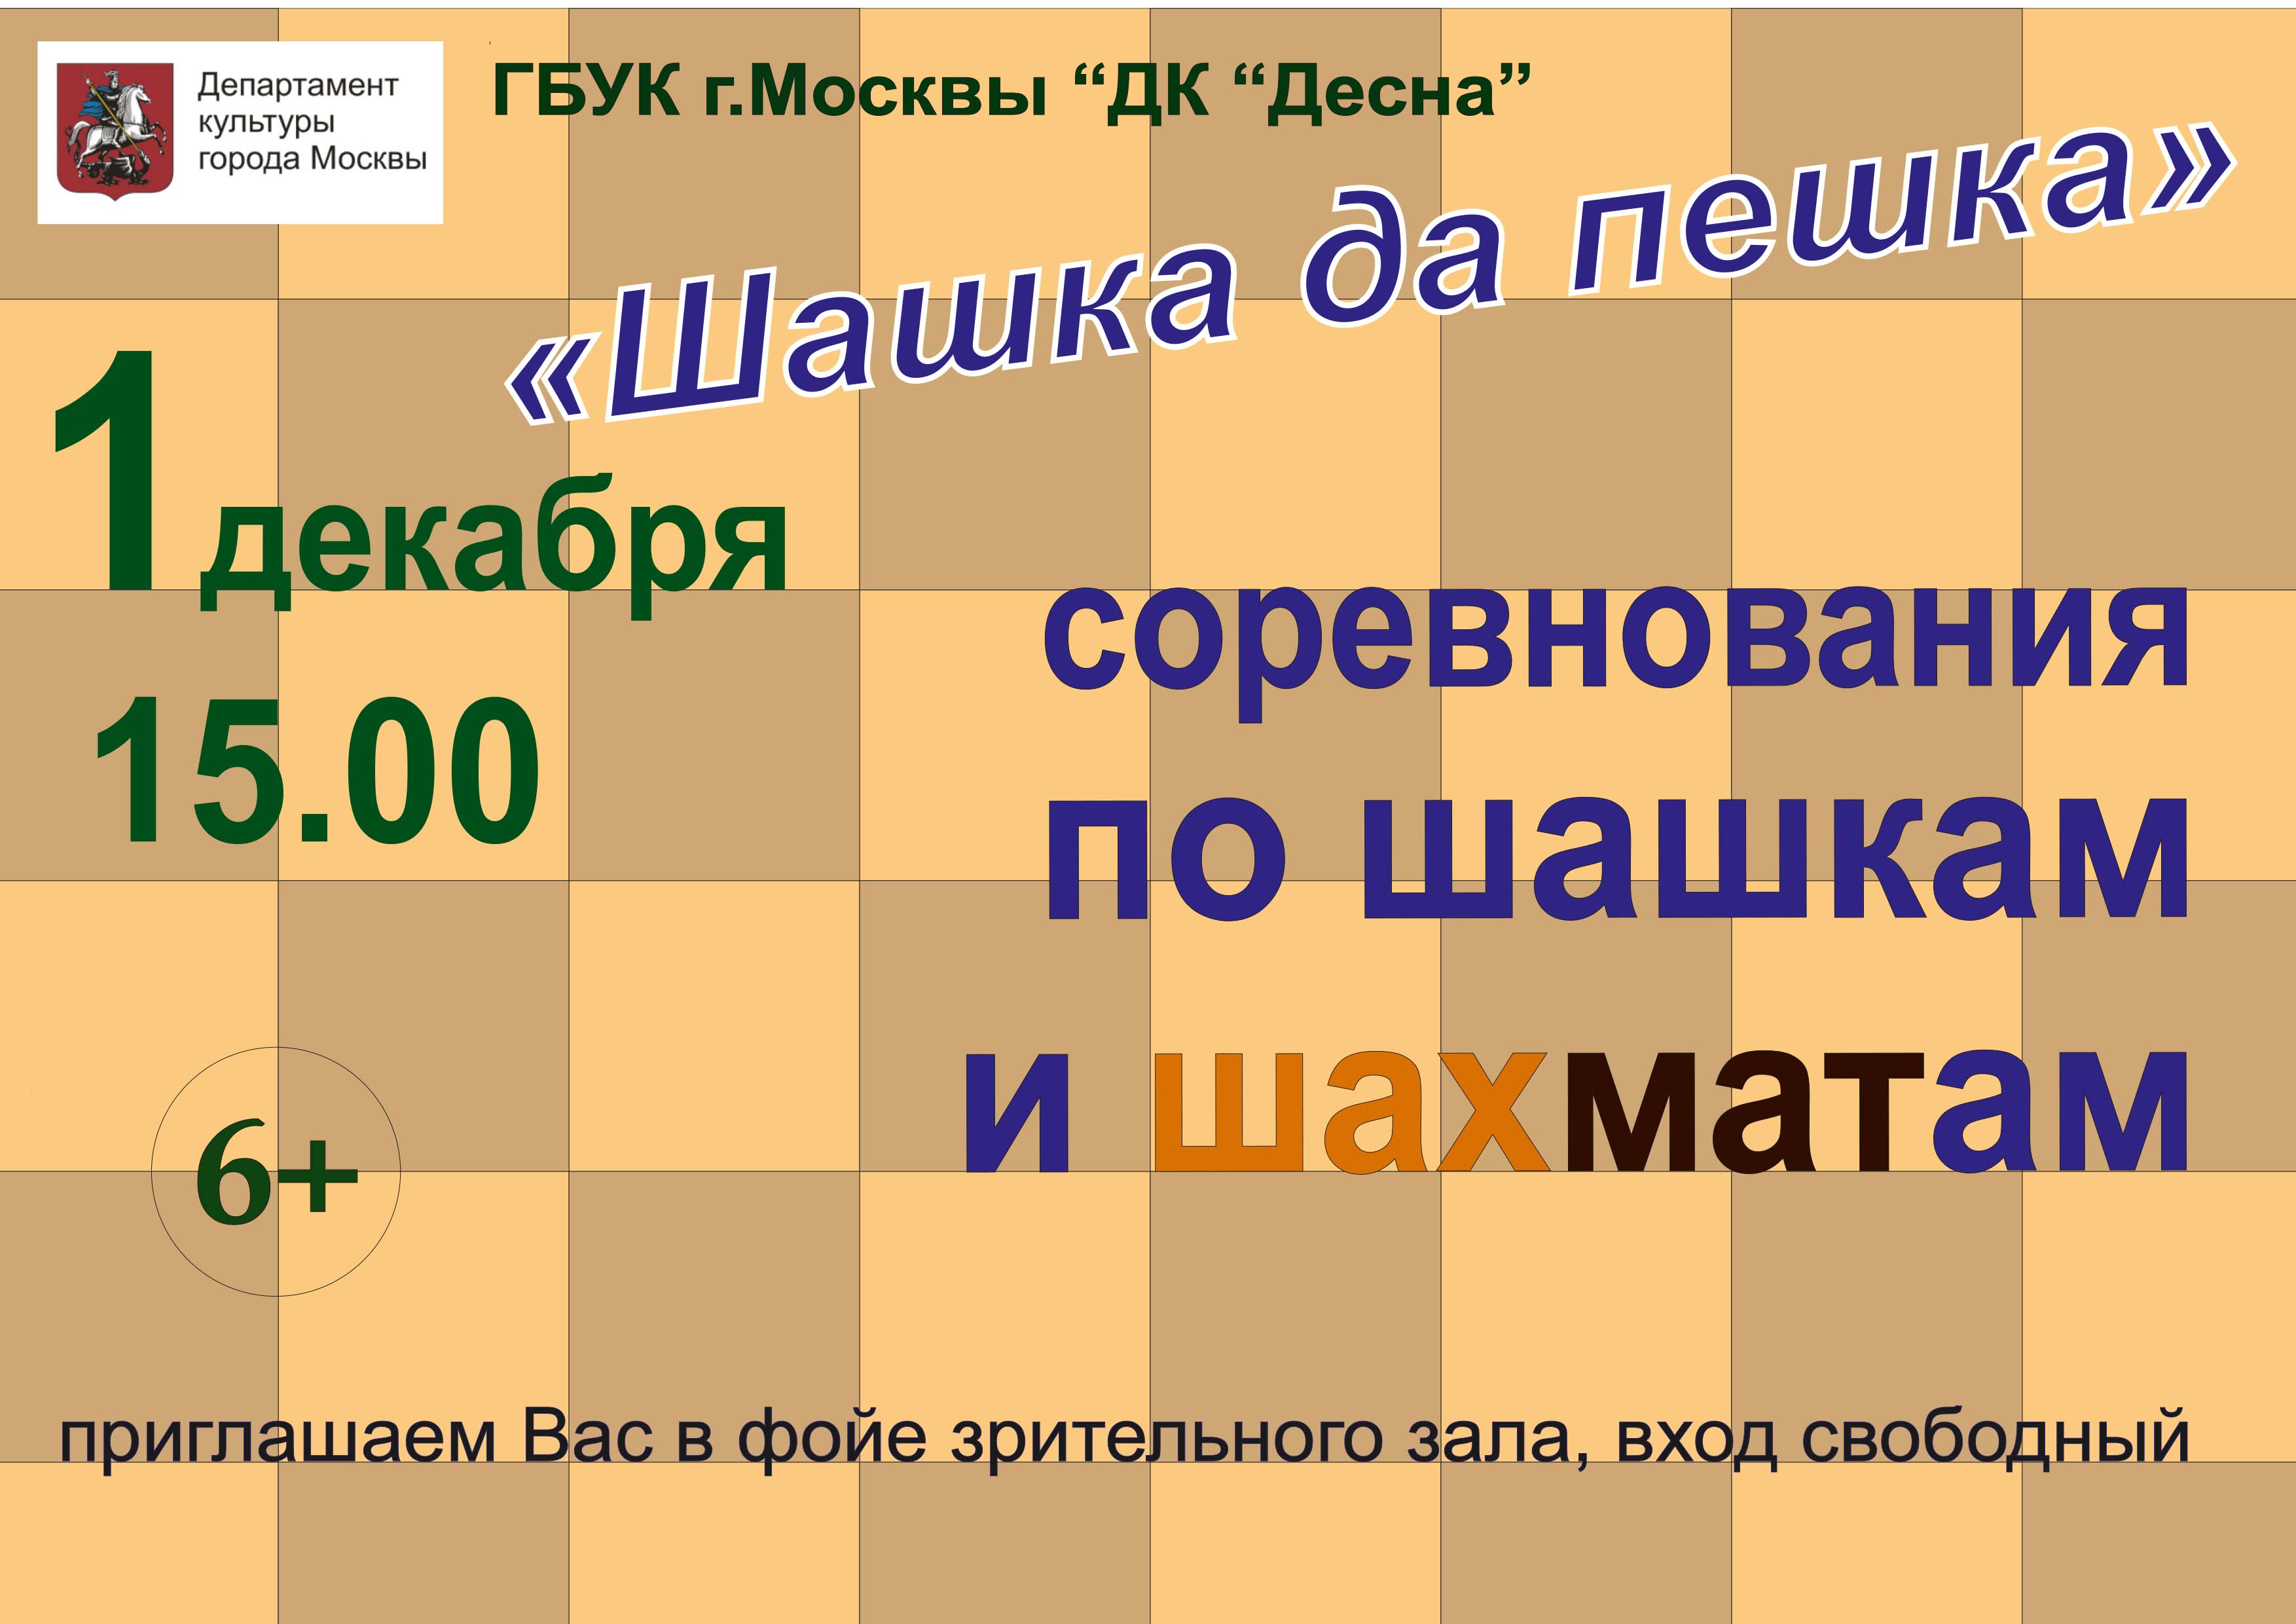 1 декабря в 15:00 ГБУК г. Москвы "ДК "Десна" приглашает всех любителей настольных игр принять участие в открытых соревнованиях по шашкам и шахматам. Мероприятие посвящено Дню инвалида